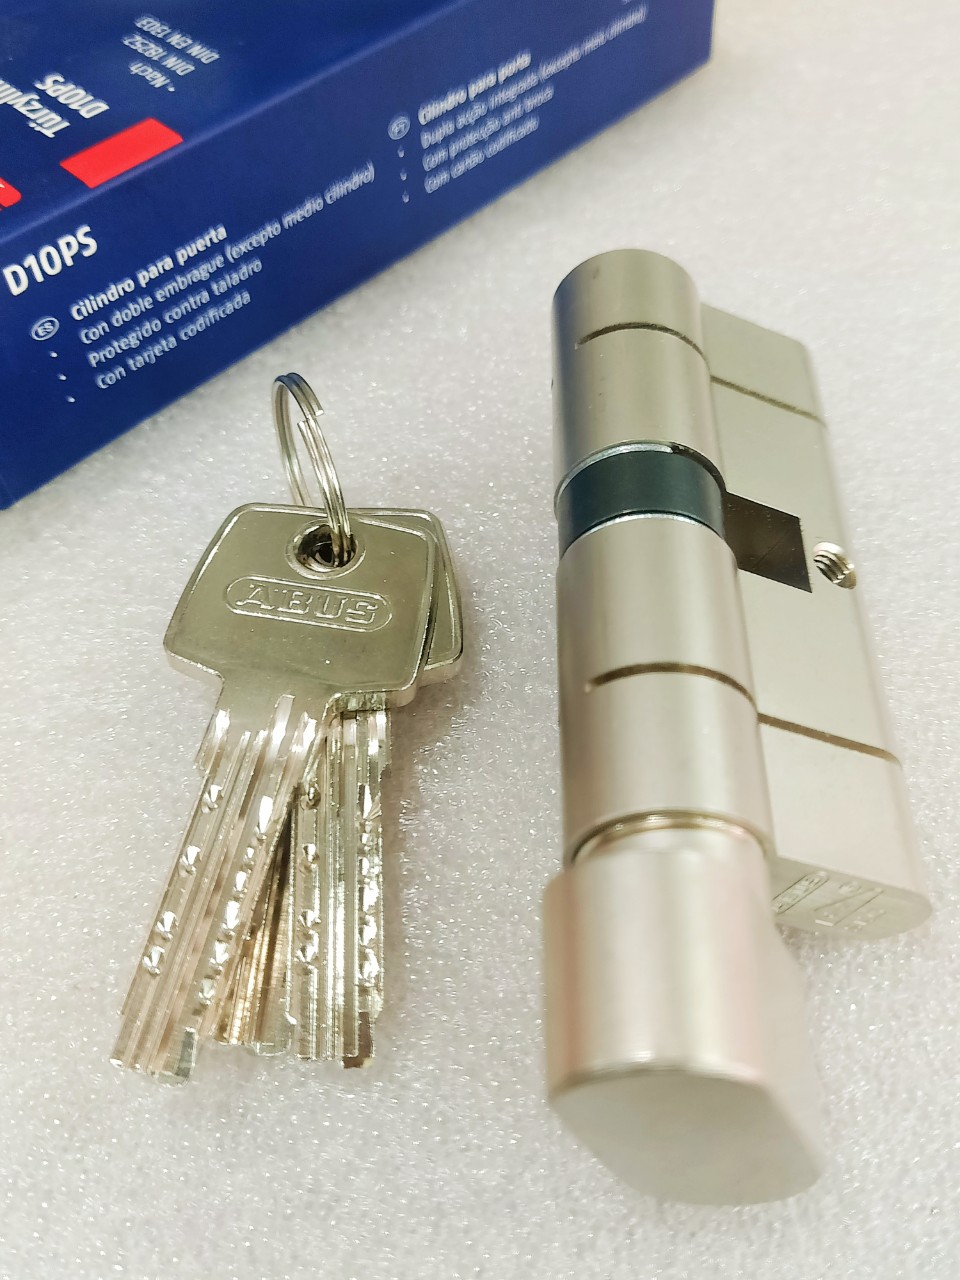 Ruột khóa vặn chìa 70mm hợp kim nhôm – Tim PA 70 vặn chìa điện tử